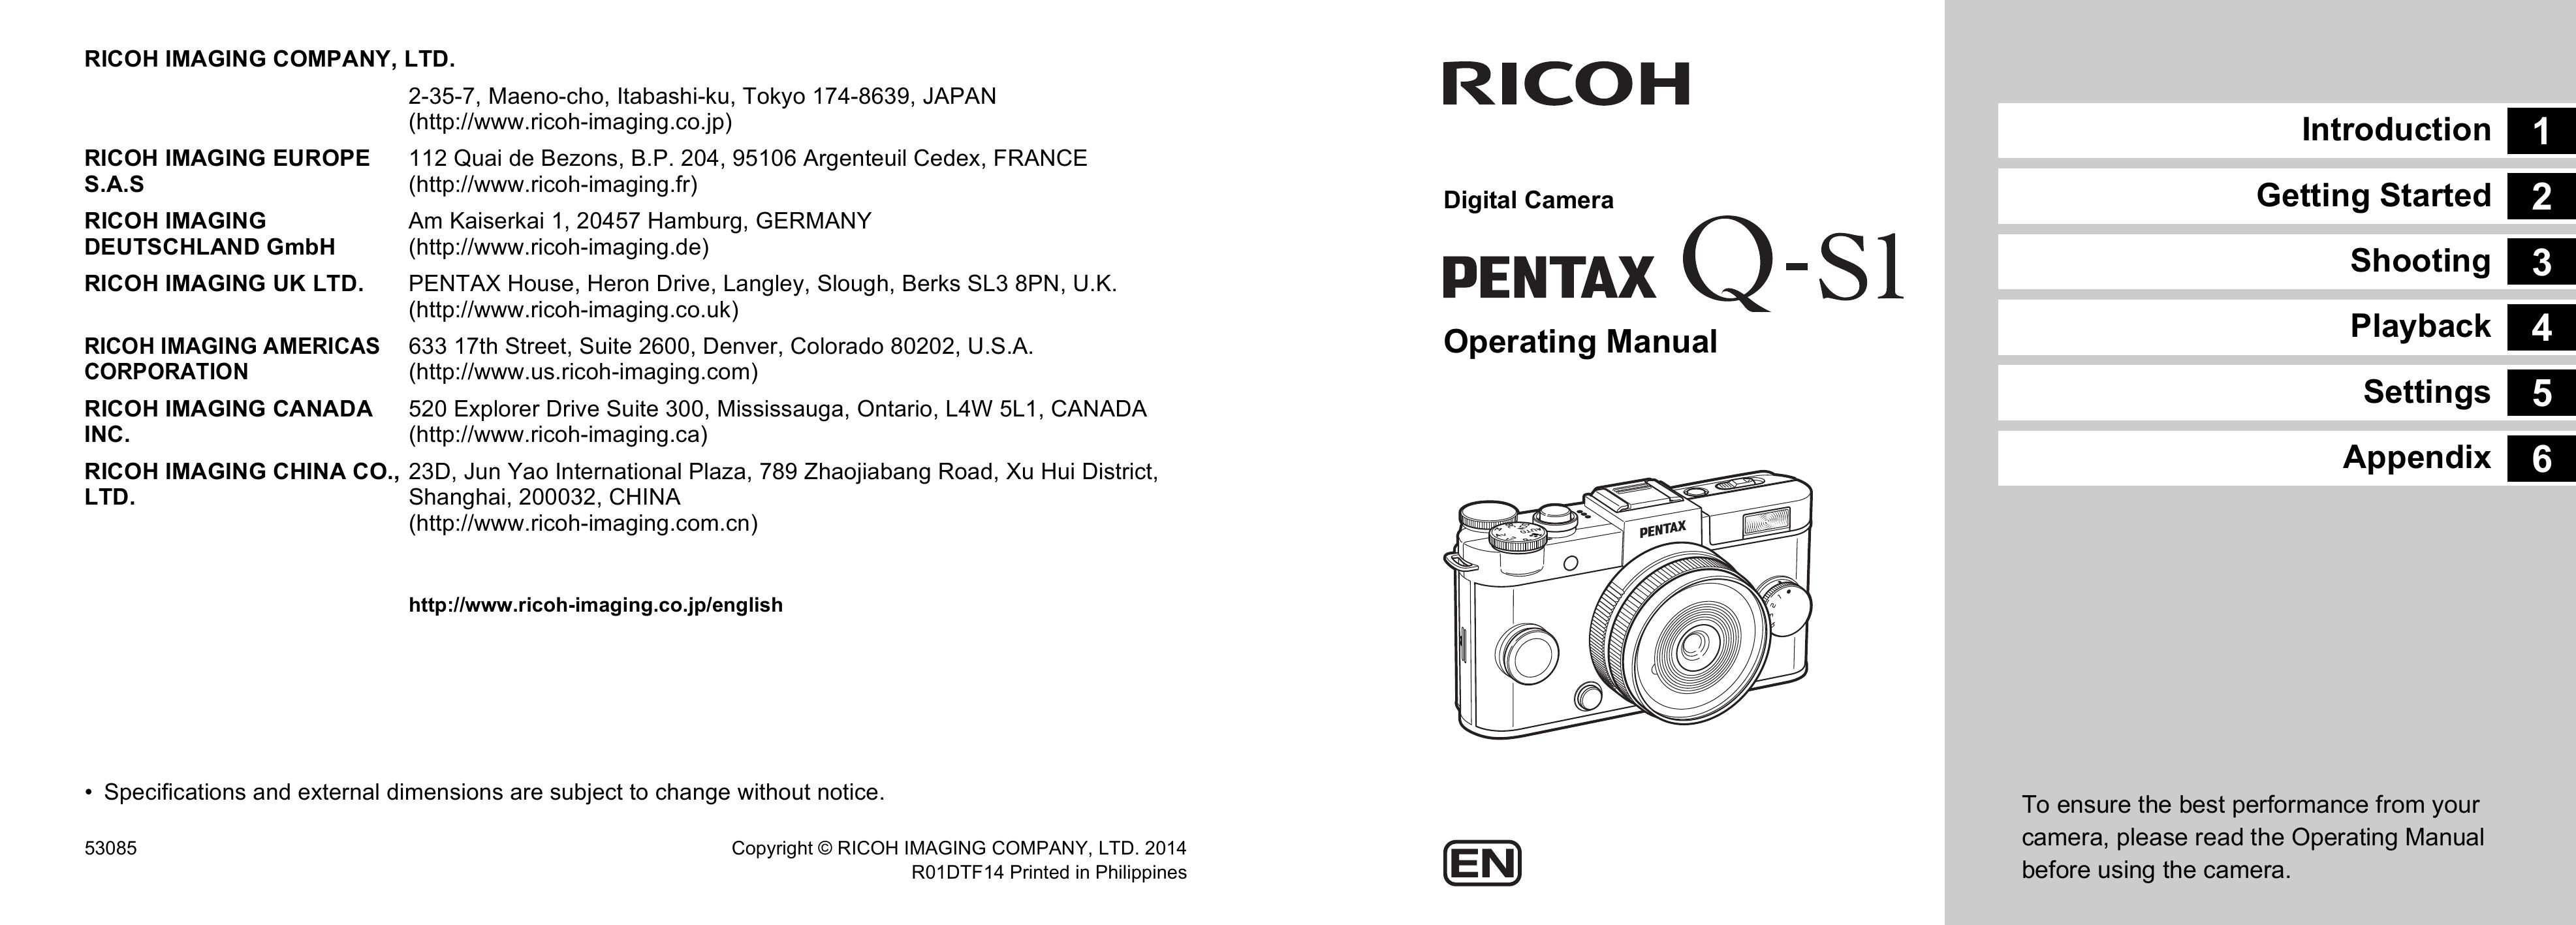 Pentax PENTAX Q-S1 Camcorder User Manual